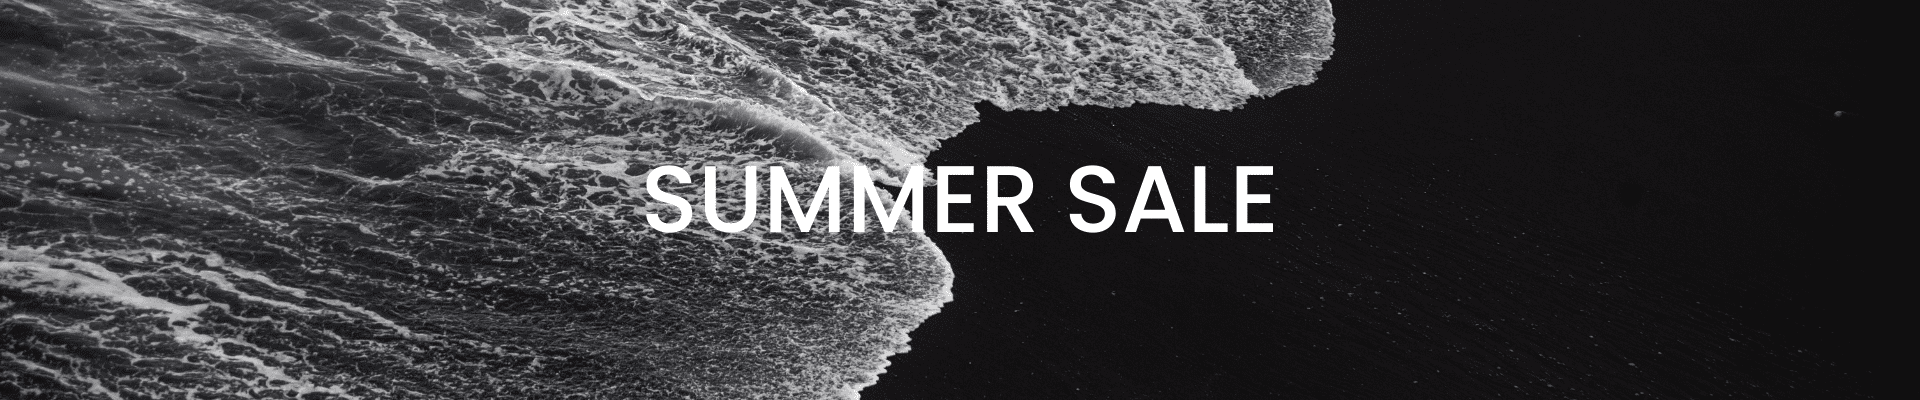 monochrome-summer-sales